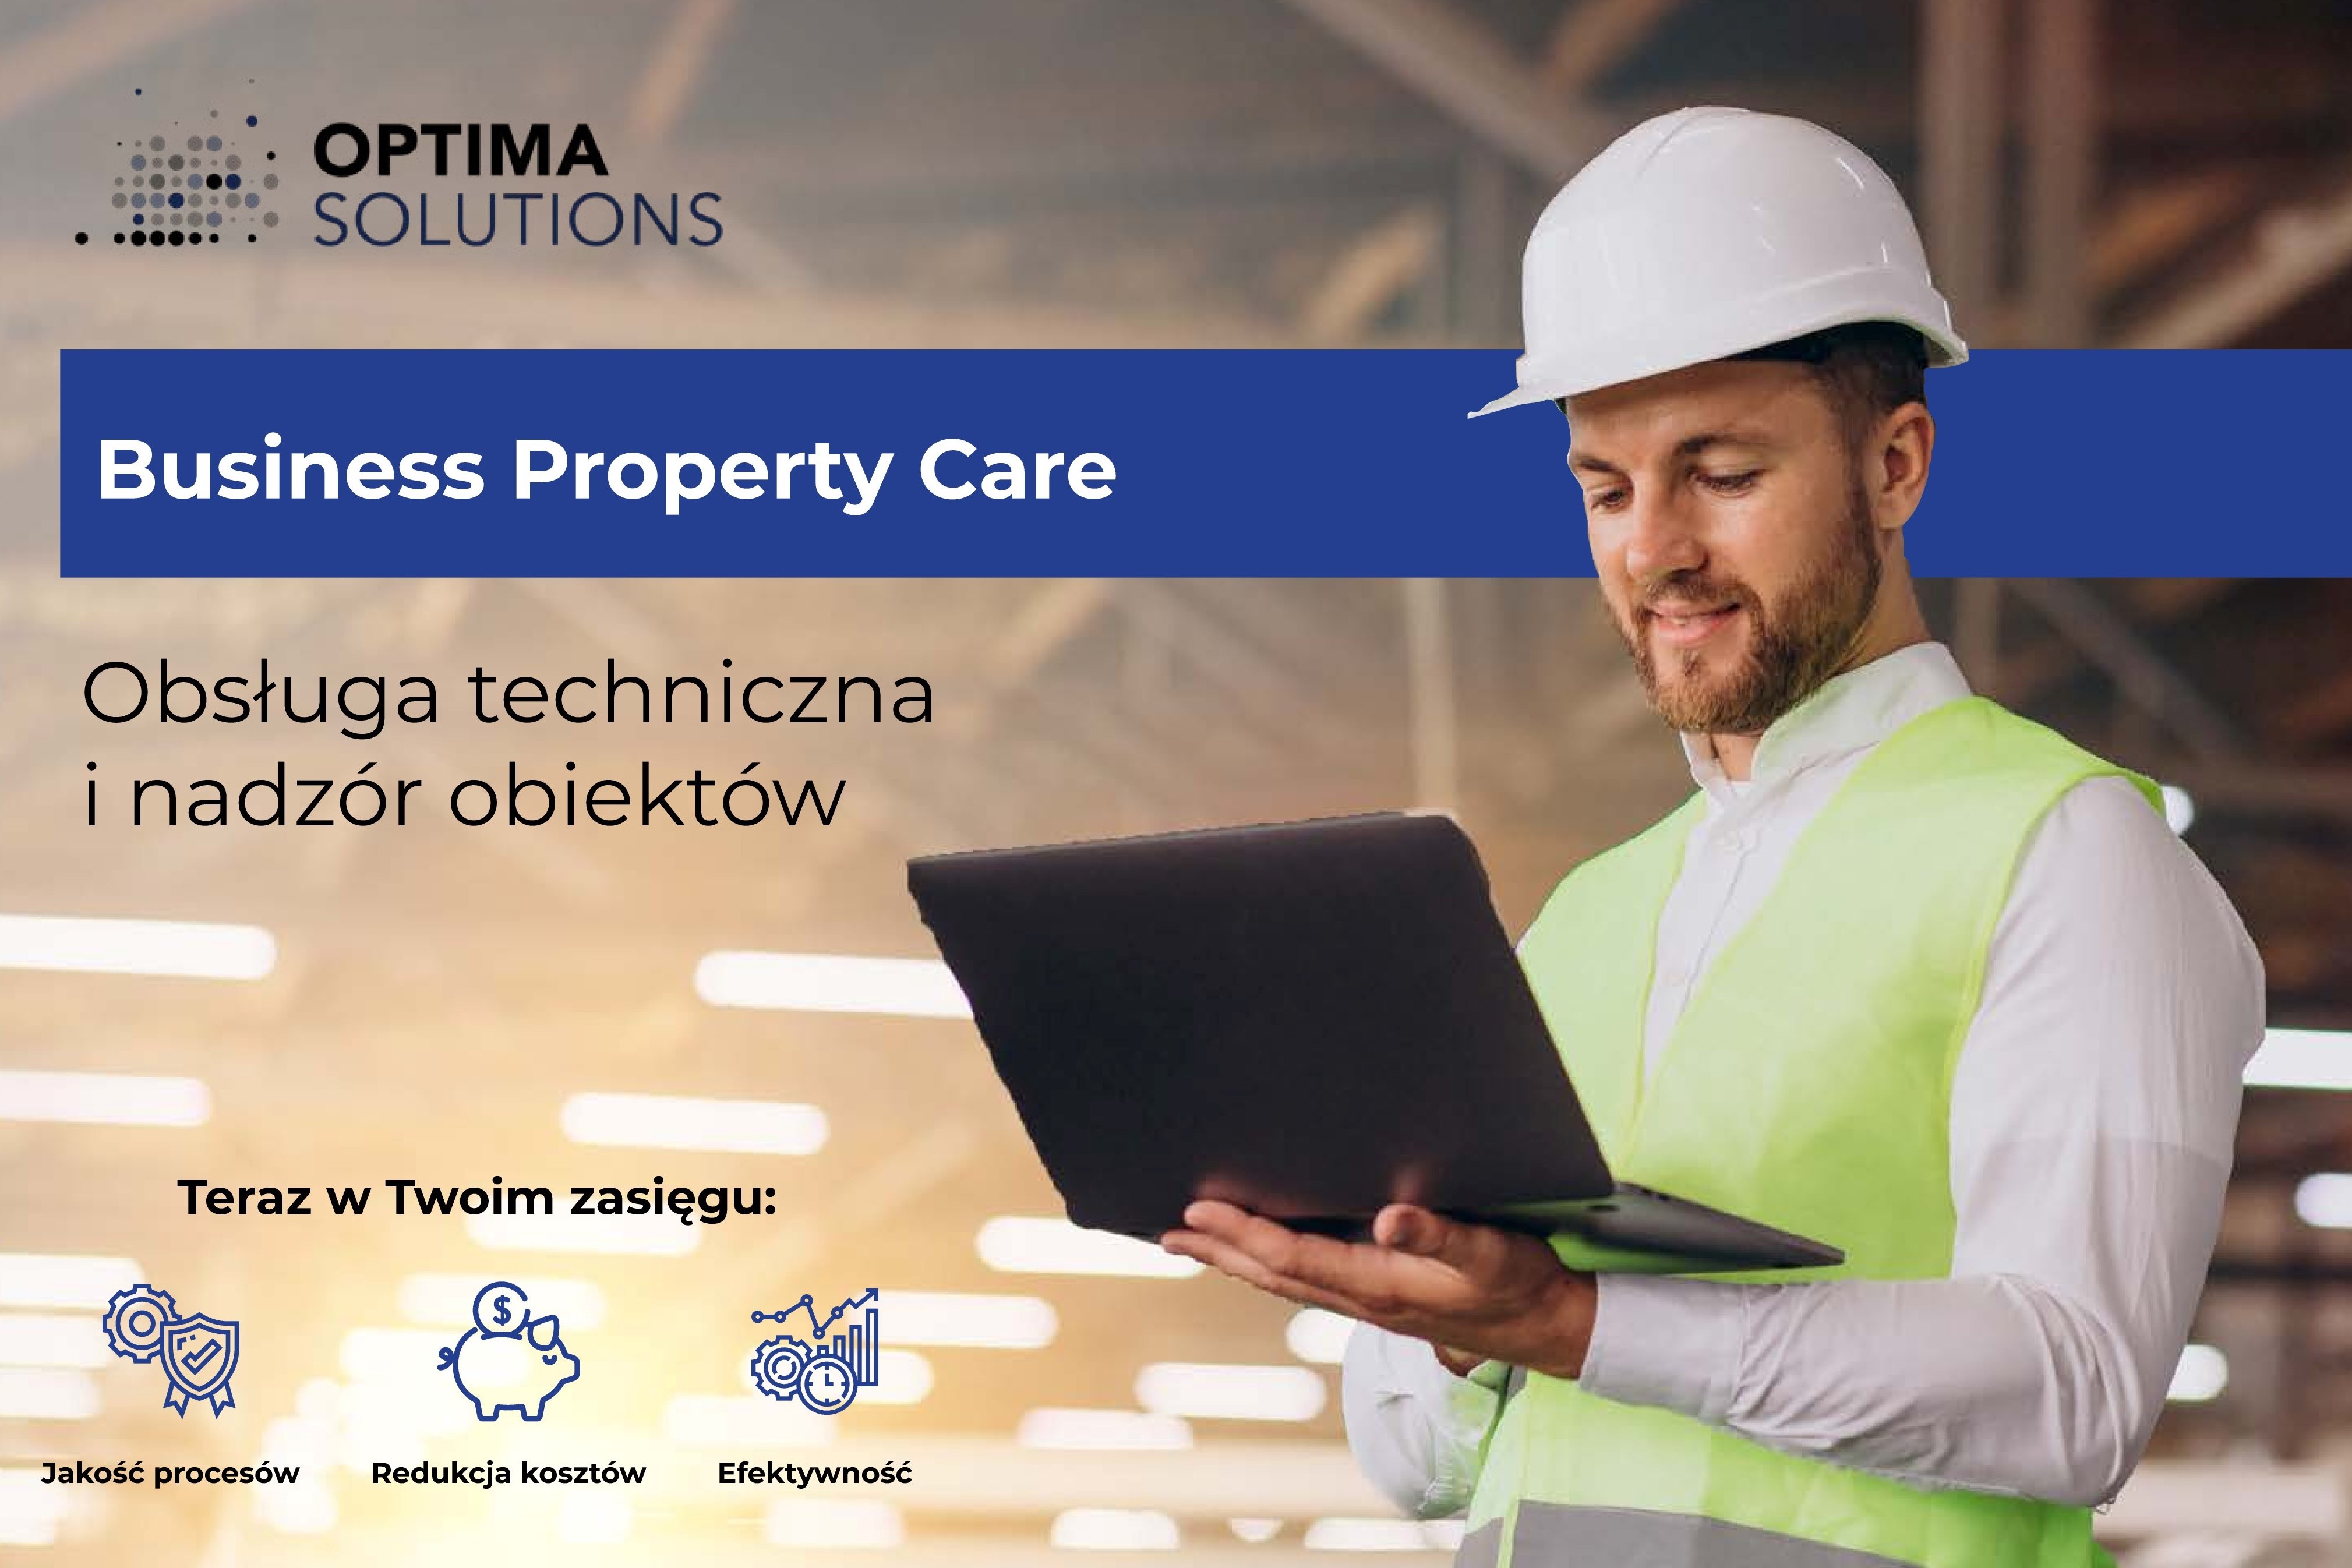 Business Property Care - Obsługa techniczna i nadzór obiektów